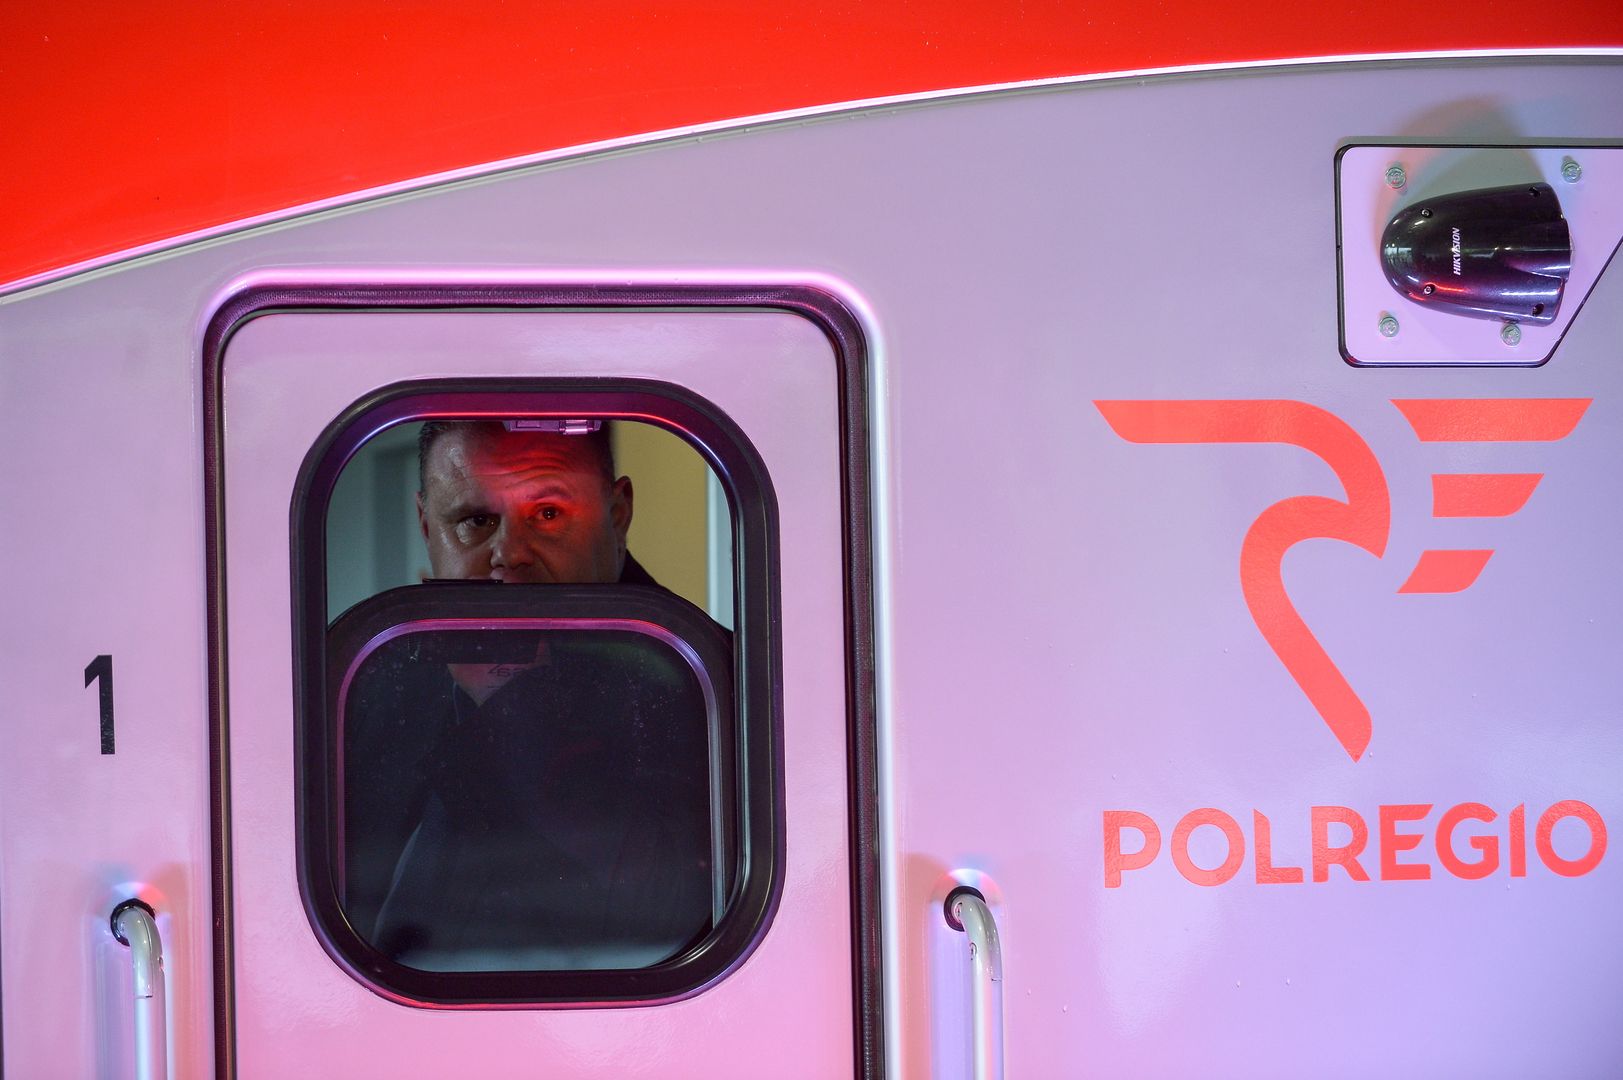 Pociąg Polregio, czyli regionalnego przewoźnika w Polsce.